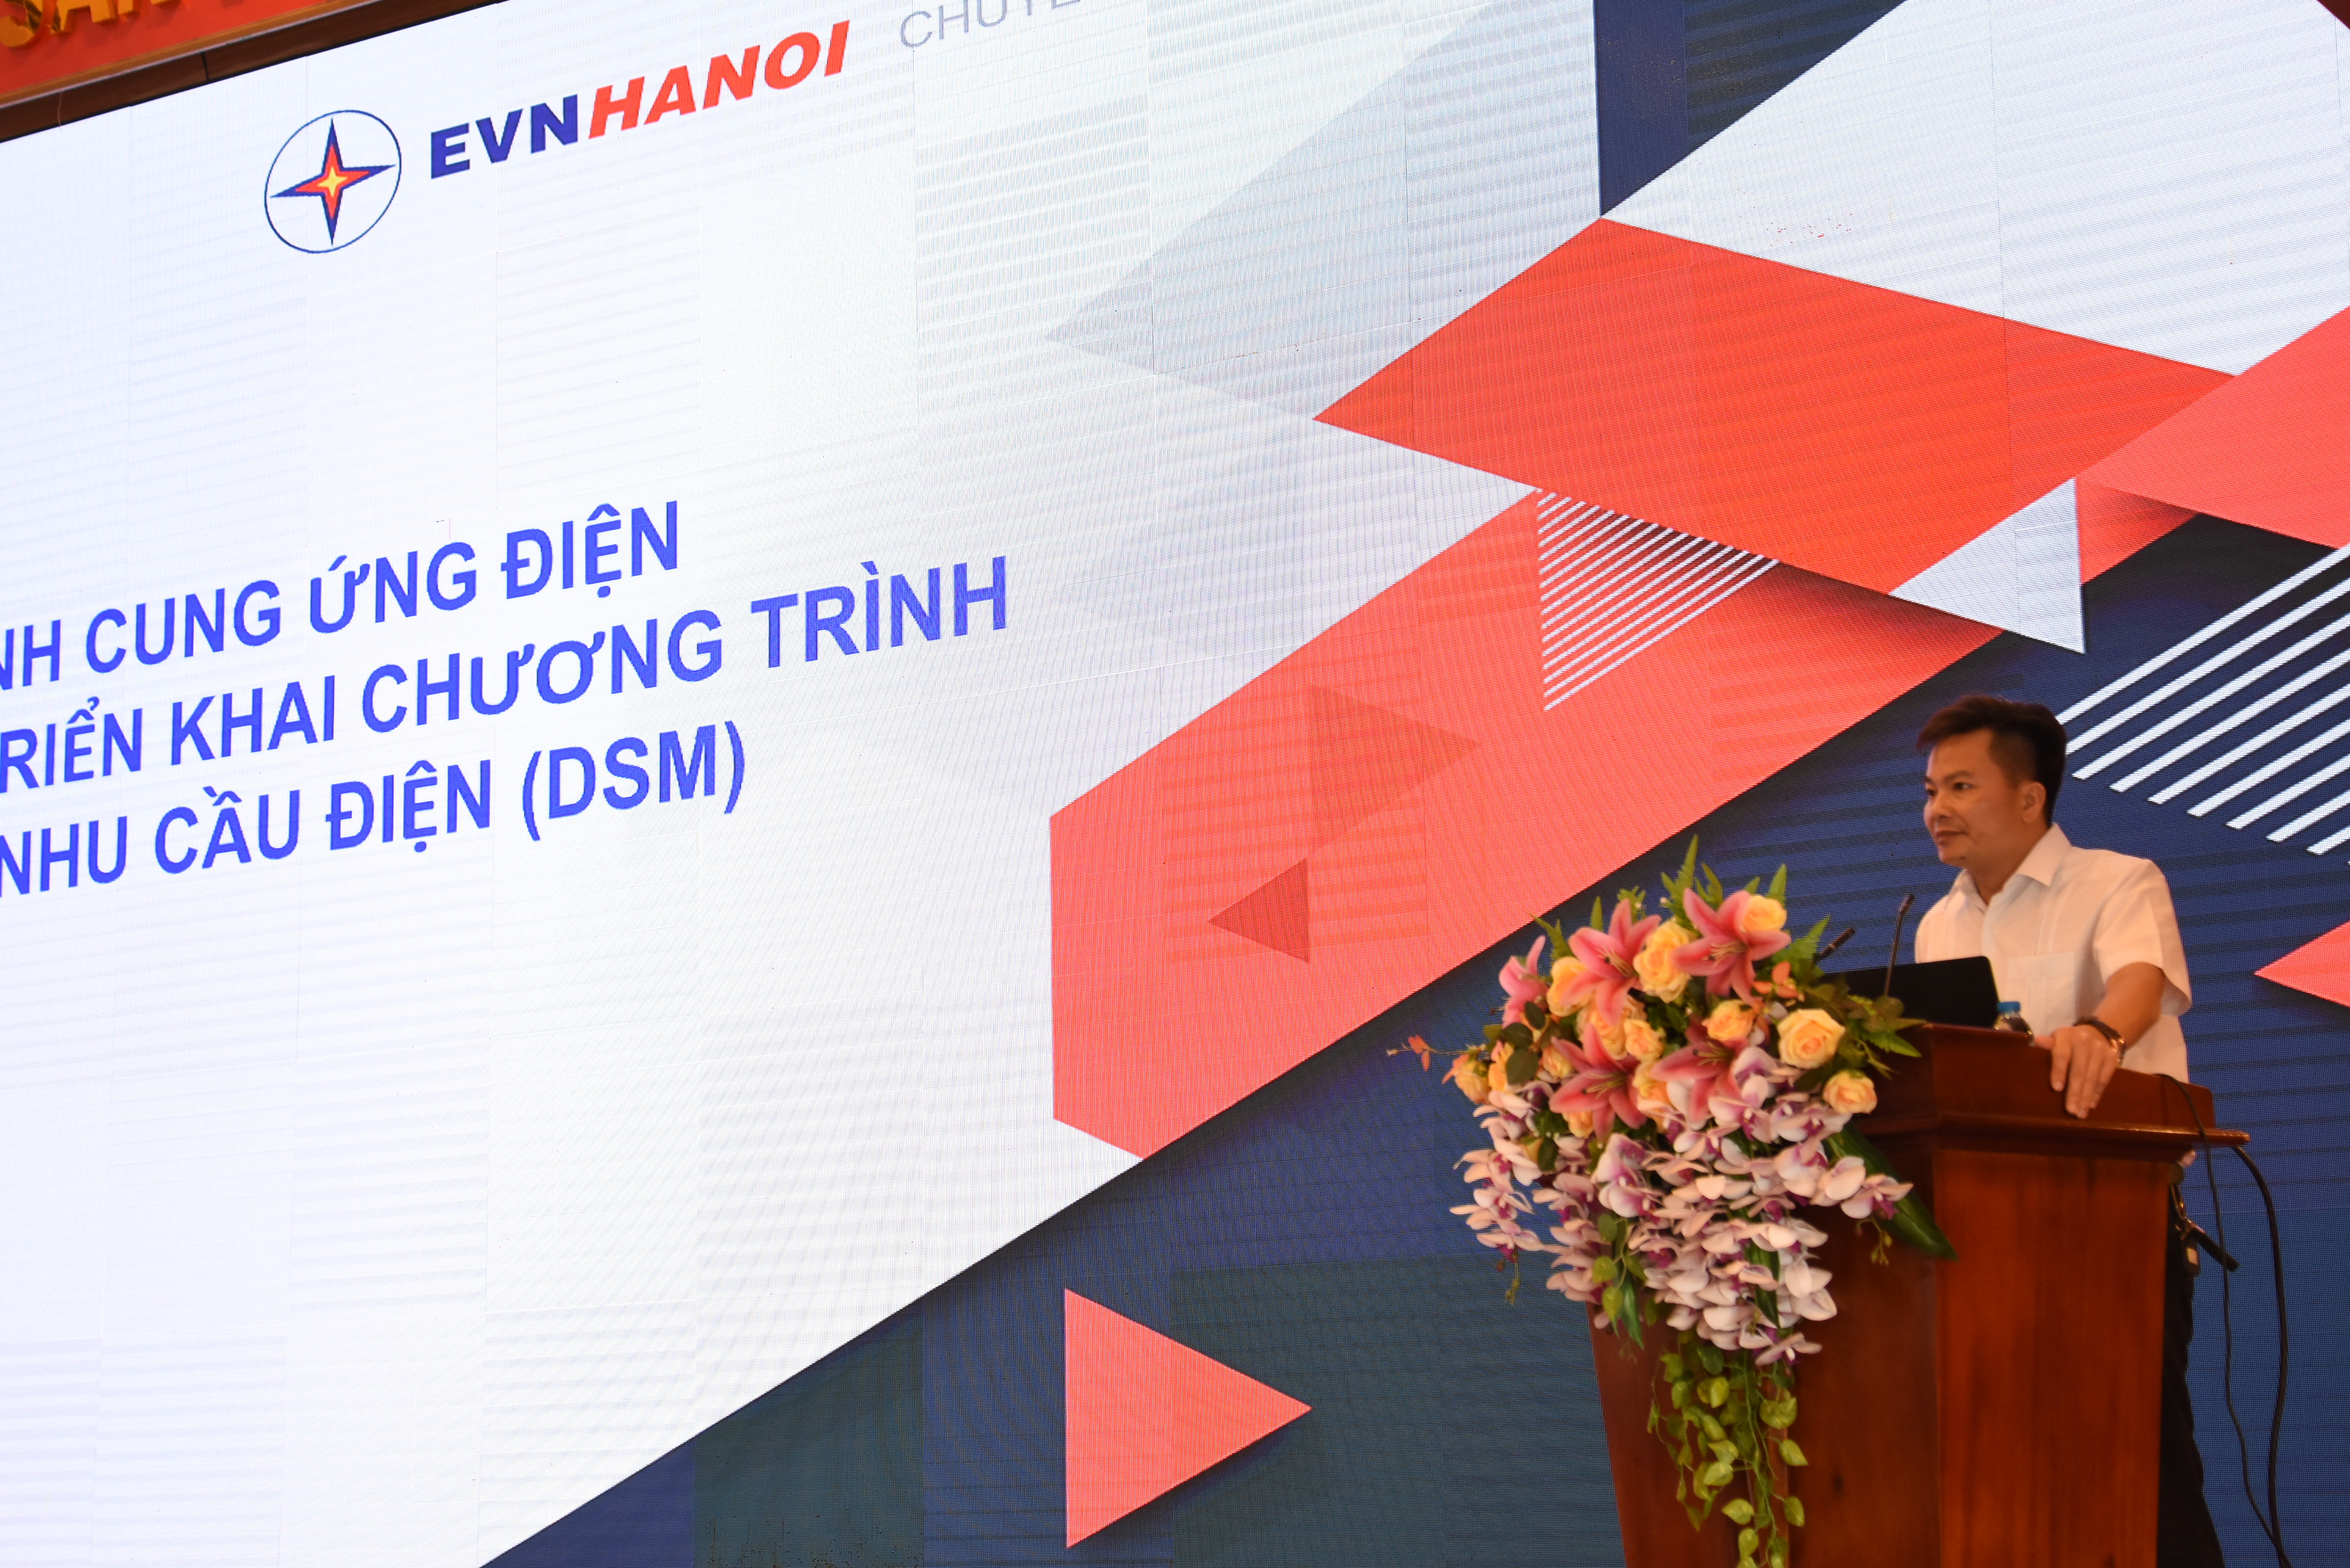 EVN HANOI triển khai chương trình DR phi thương mại tới khách hàng sử dụng điện tại Hà Nội